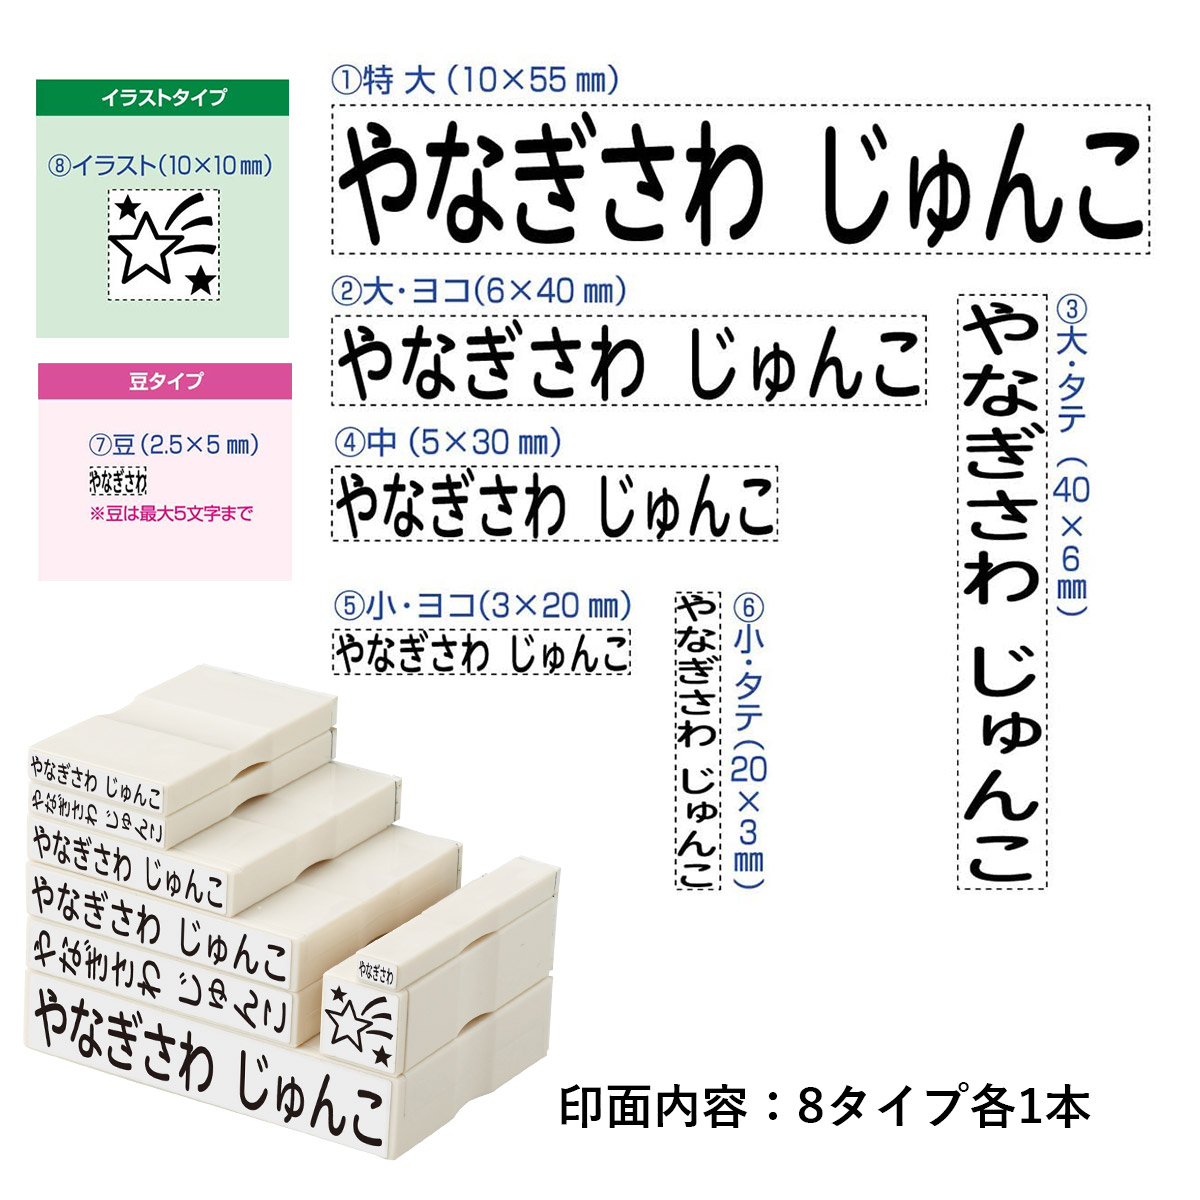 おなまえスタンプ入学準備BOX 【メールオーダー式】_4